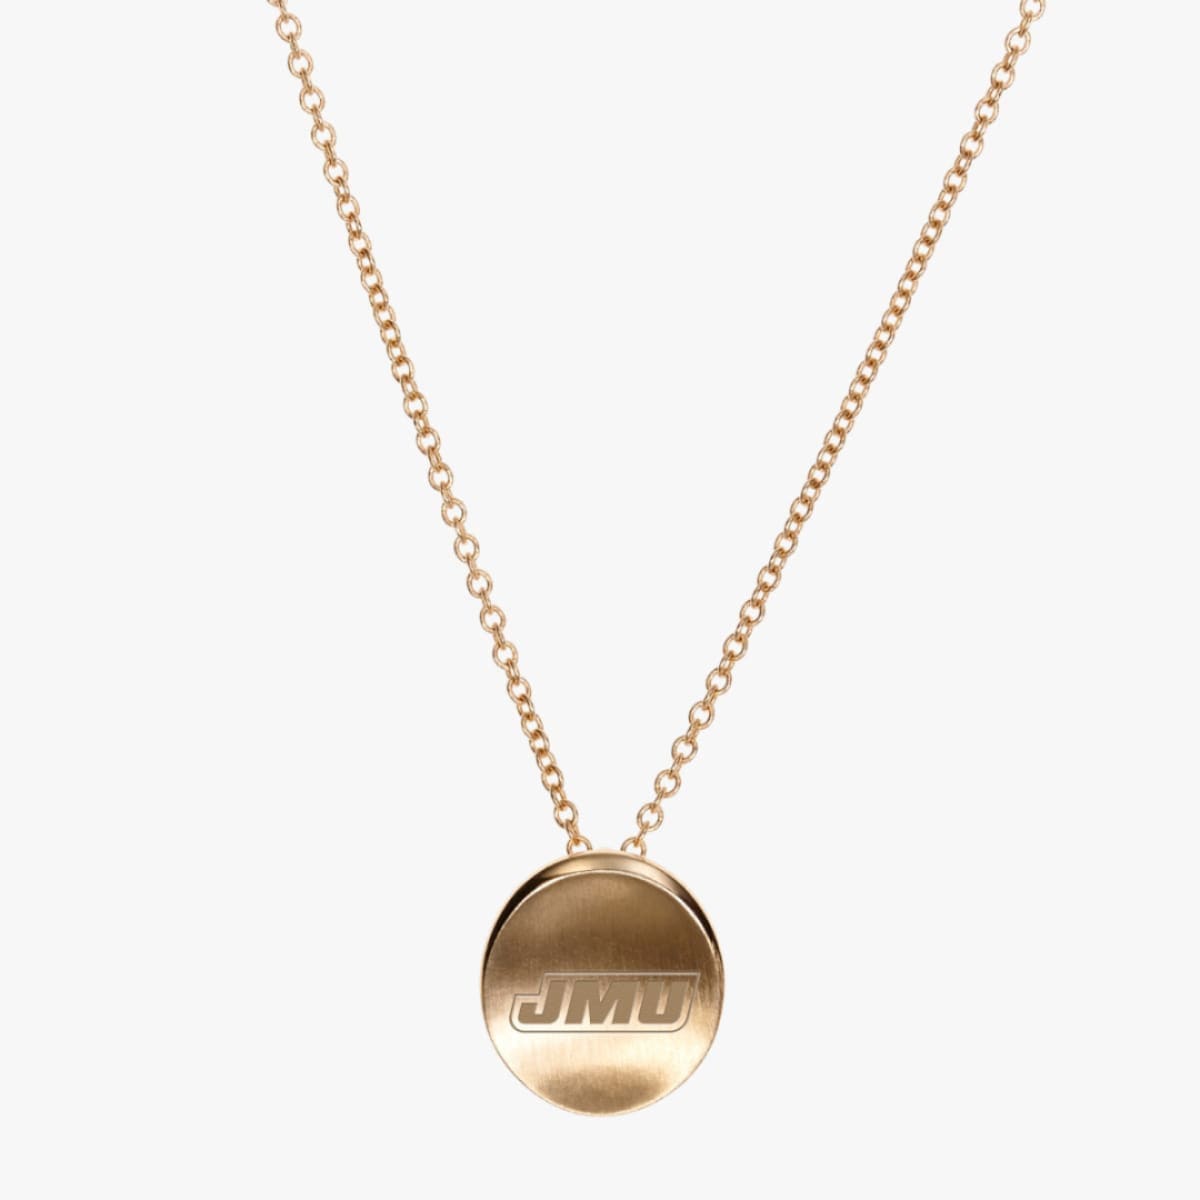 JMU Organic Petite Necklace by Kyle Cavan - CAVAN GOLD™